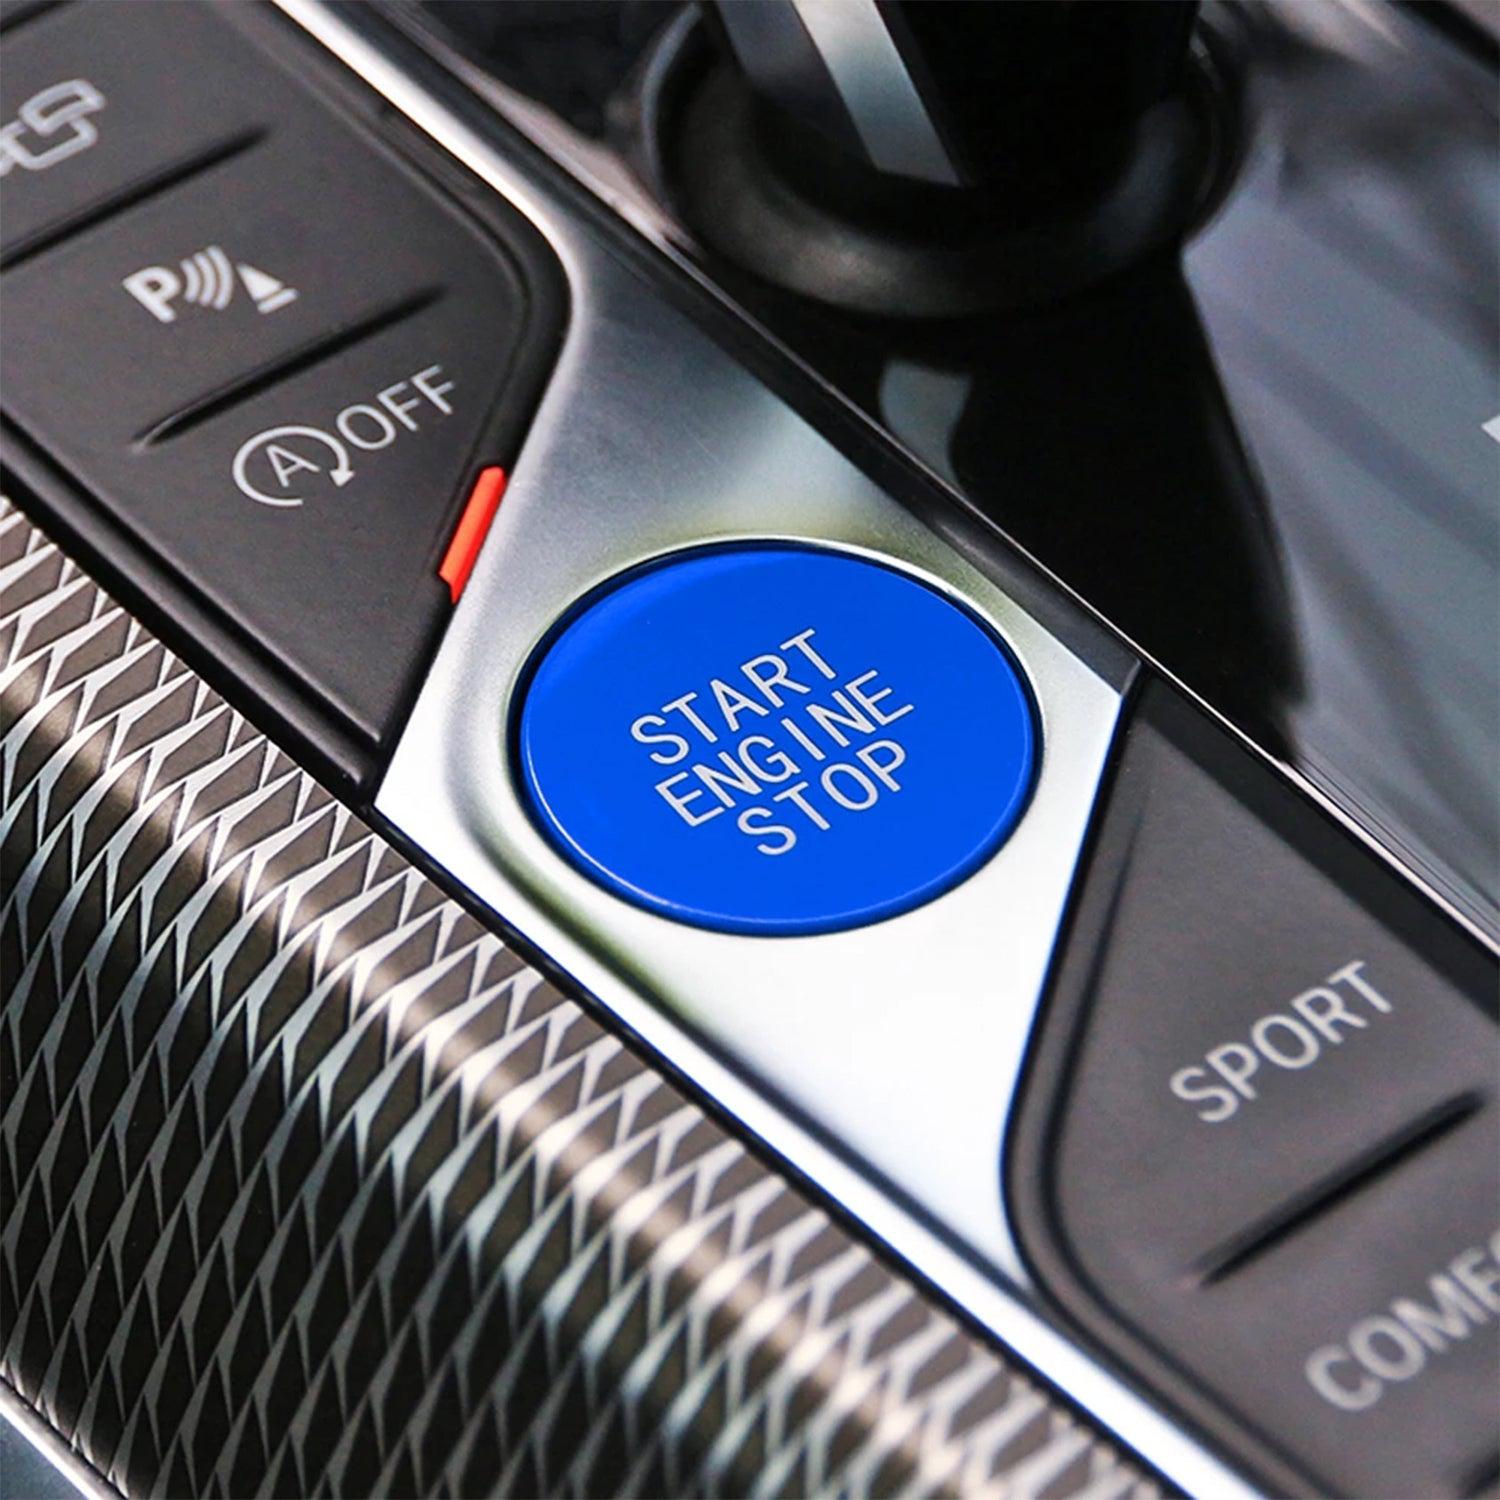 SHFT BMW G Series Start-Stop Engine Button In Blue-R44 Performance